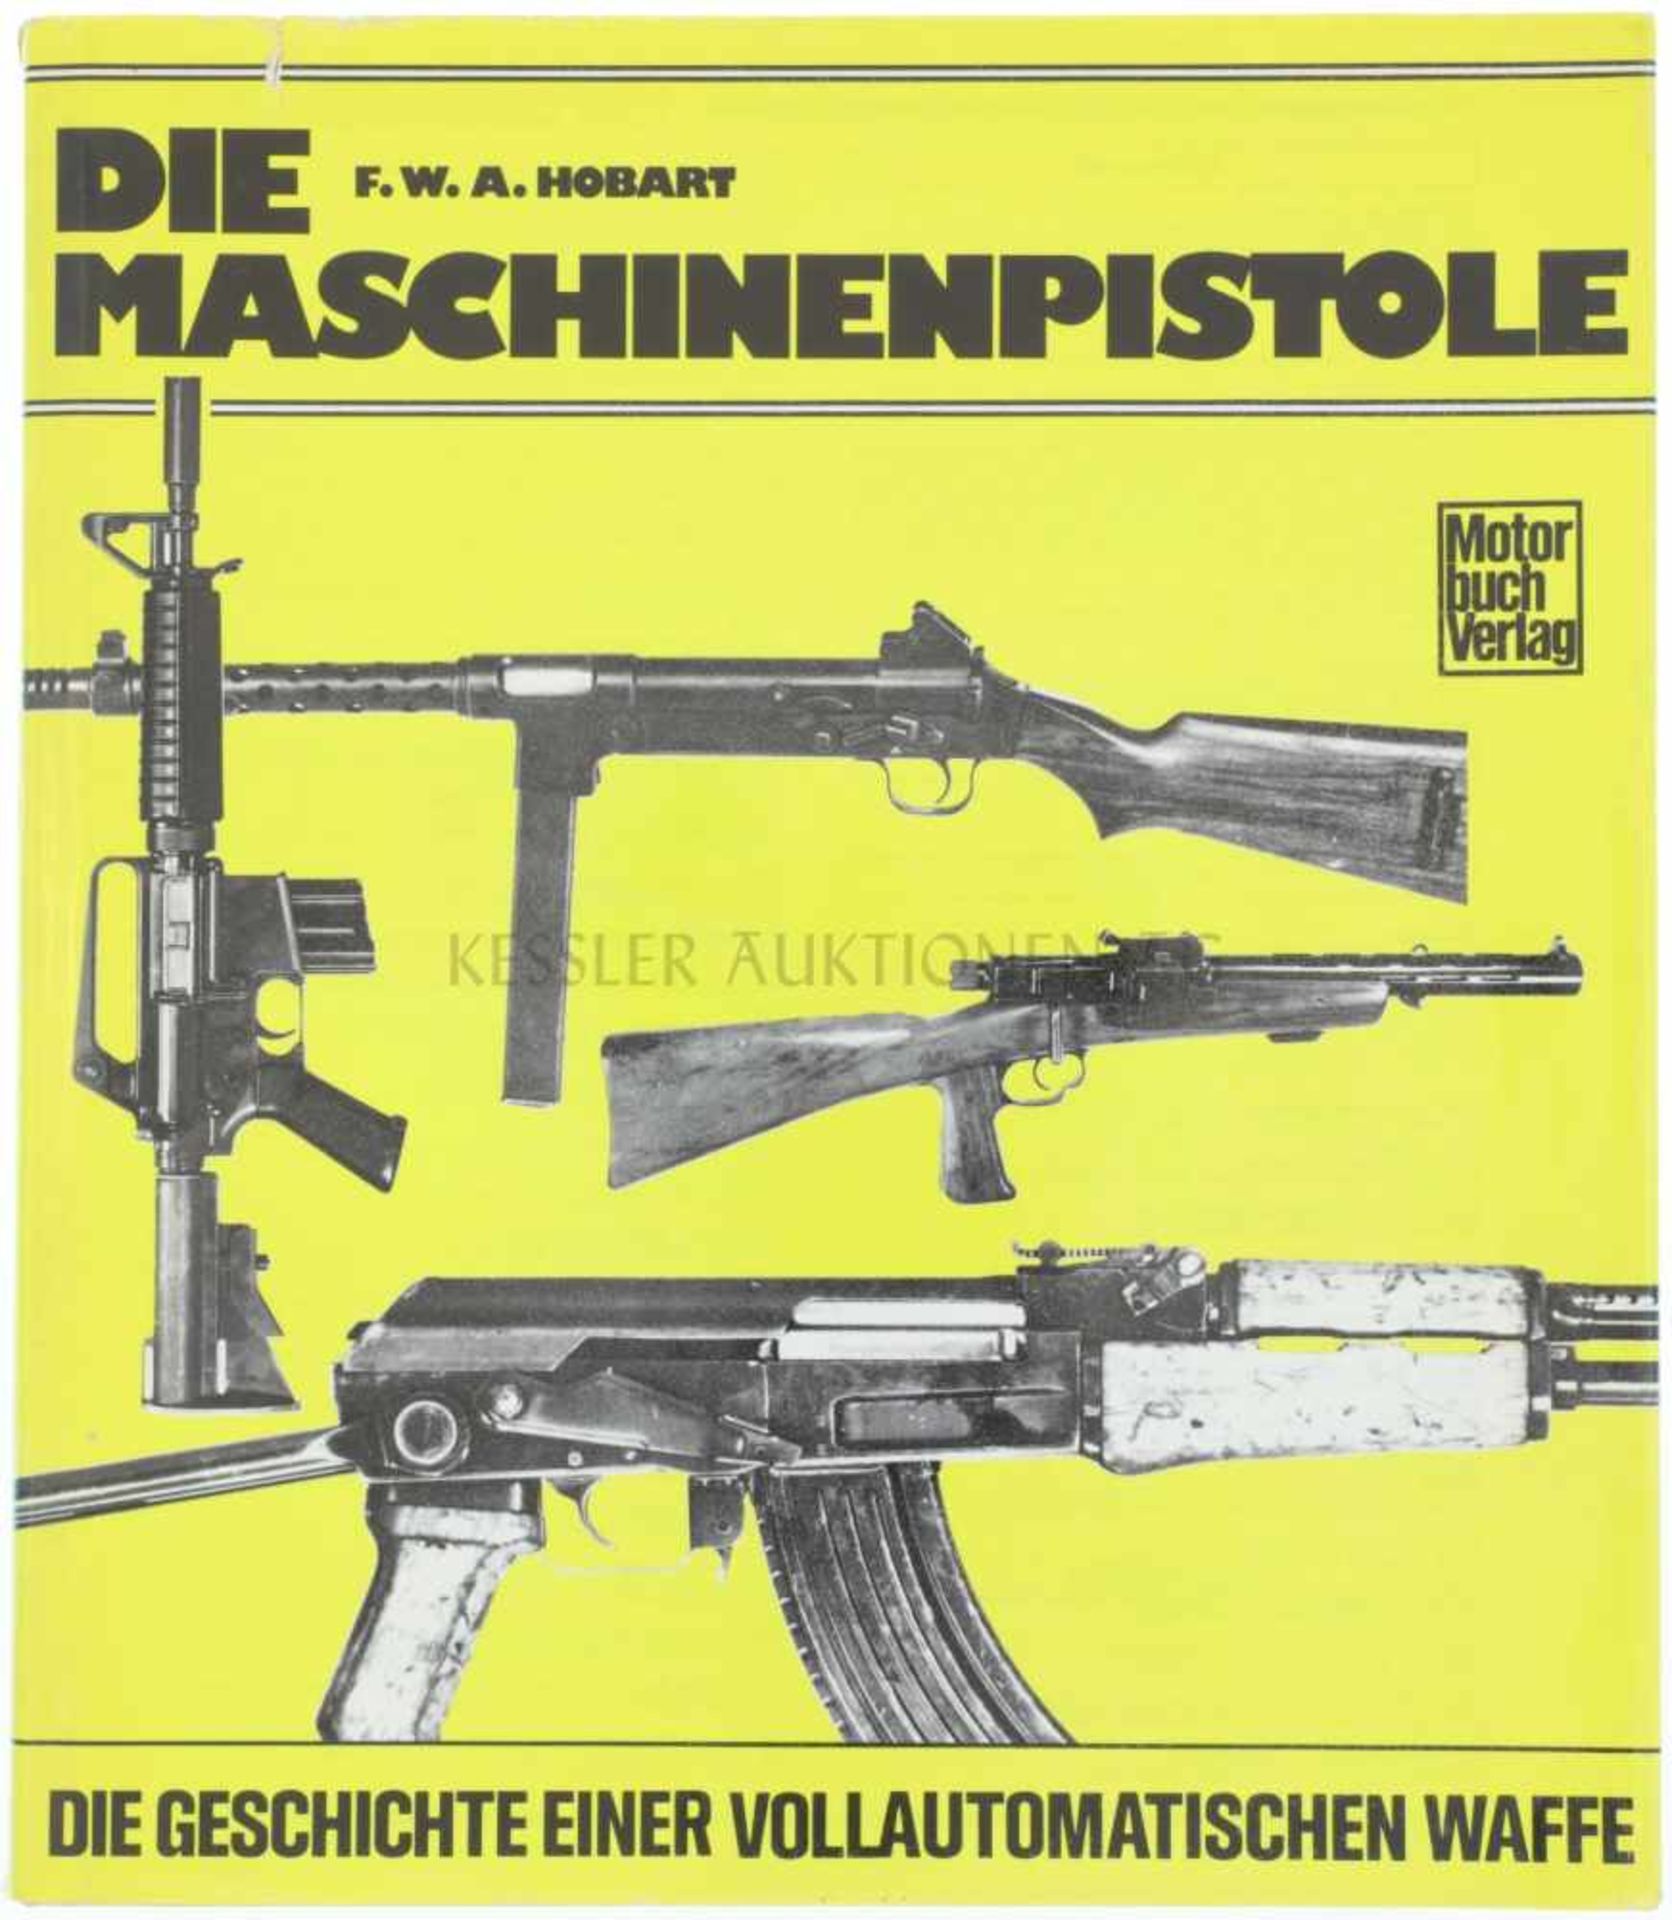 Die Maschinenpistole, die Geschichte einer vollautomatischen Waffe Autor F.W.A. Hobart, Stuttgart